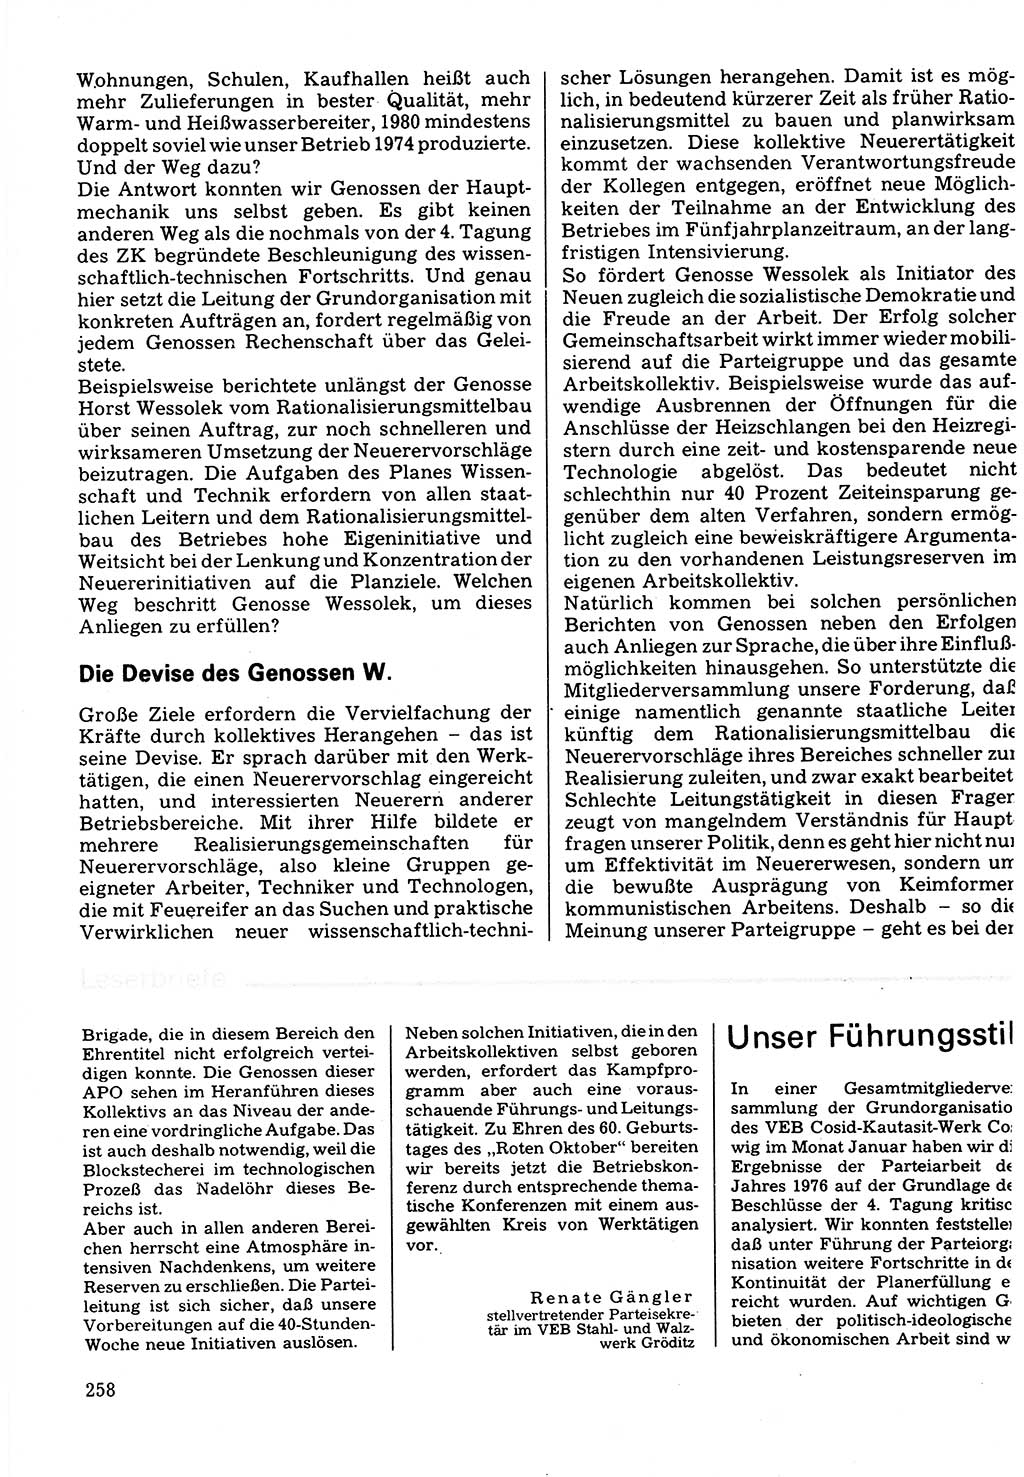 Neuer Weg (NW), Organ des Zentralkomitees (ZK) der SED (Sozialistische Einheitspartei Deutschlands) für Fragen des Parteilebens, 32. Jahrgang [Deutsche Demokratische Republik (DDR)] 1977, Seite 258 (NW ZK SED DDR 1977, S. 258)